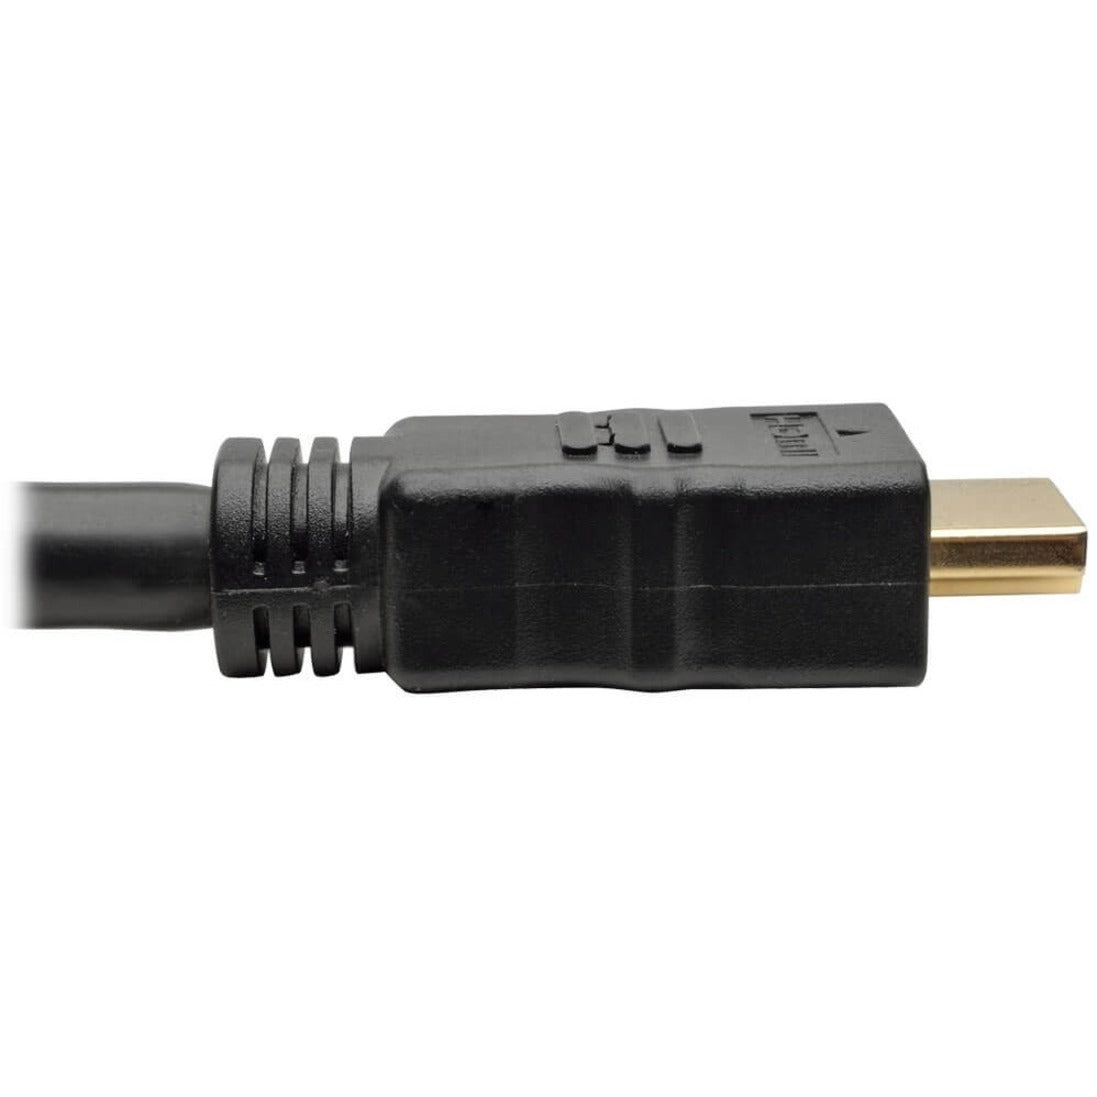 Tripp Lite P568-100-ACT Cable de A/V HDMI HDMI de alta velocidad activo negro 100 pies. Marca: Tripp Lite. Traducir marca: Tripp Lite.